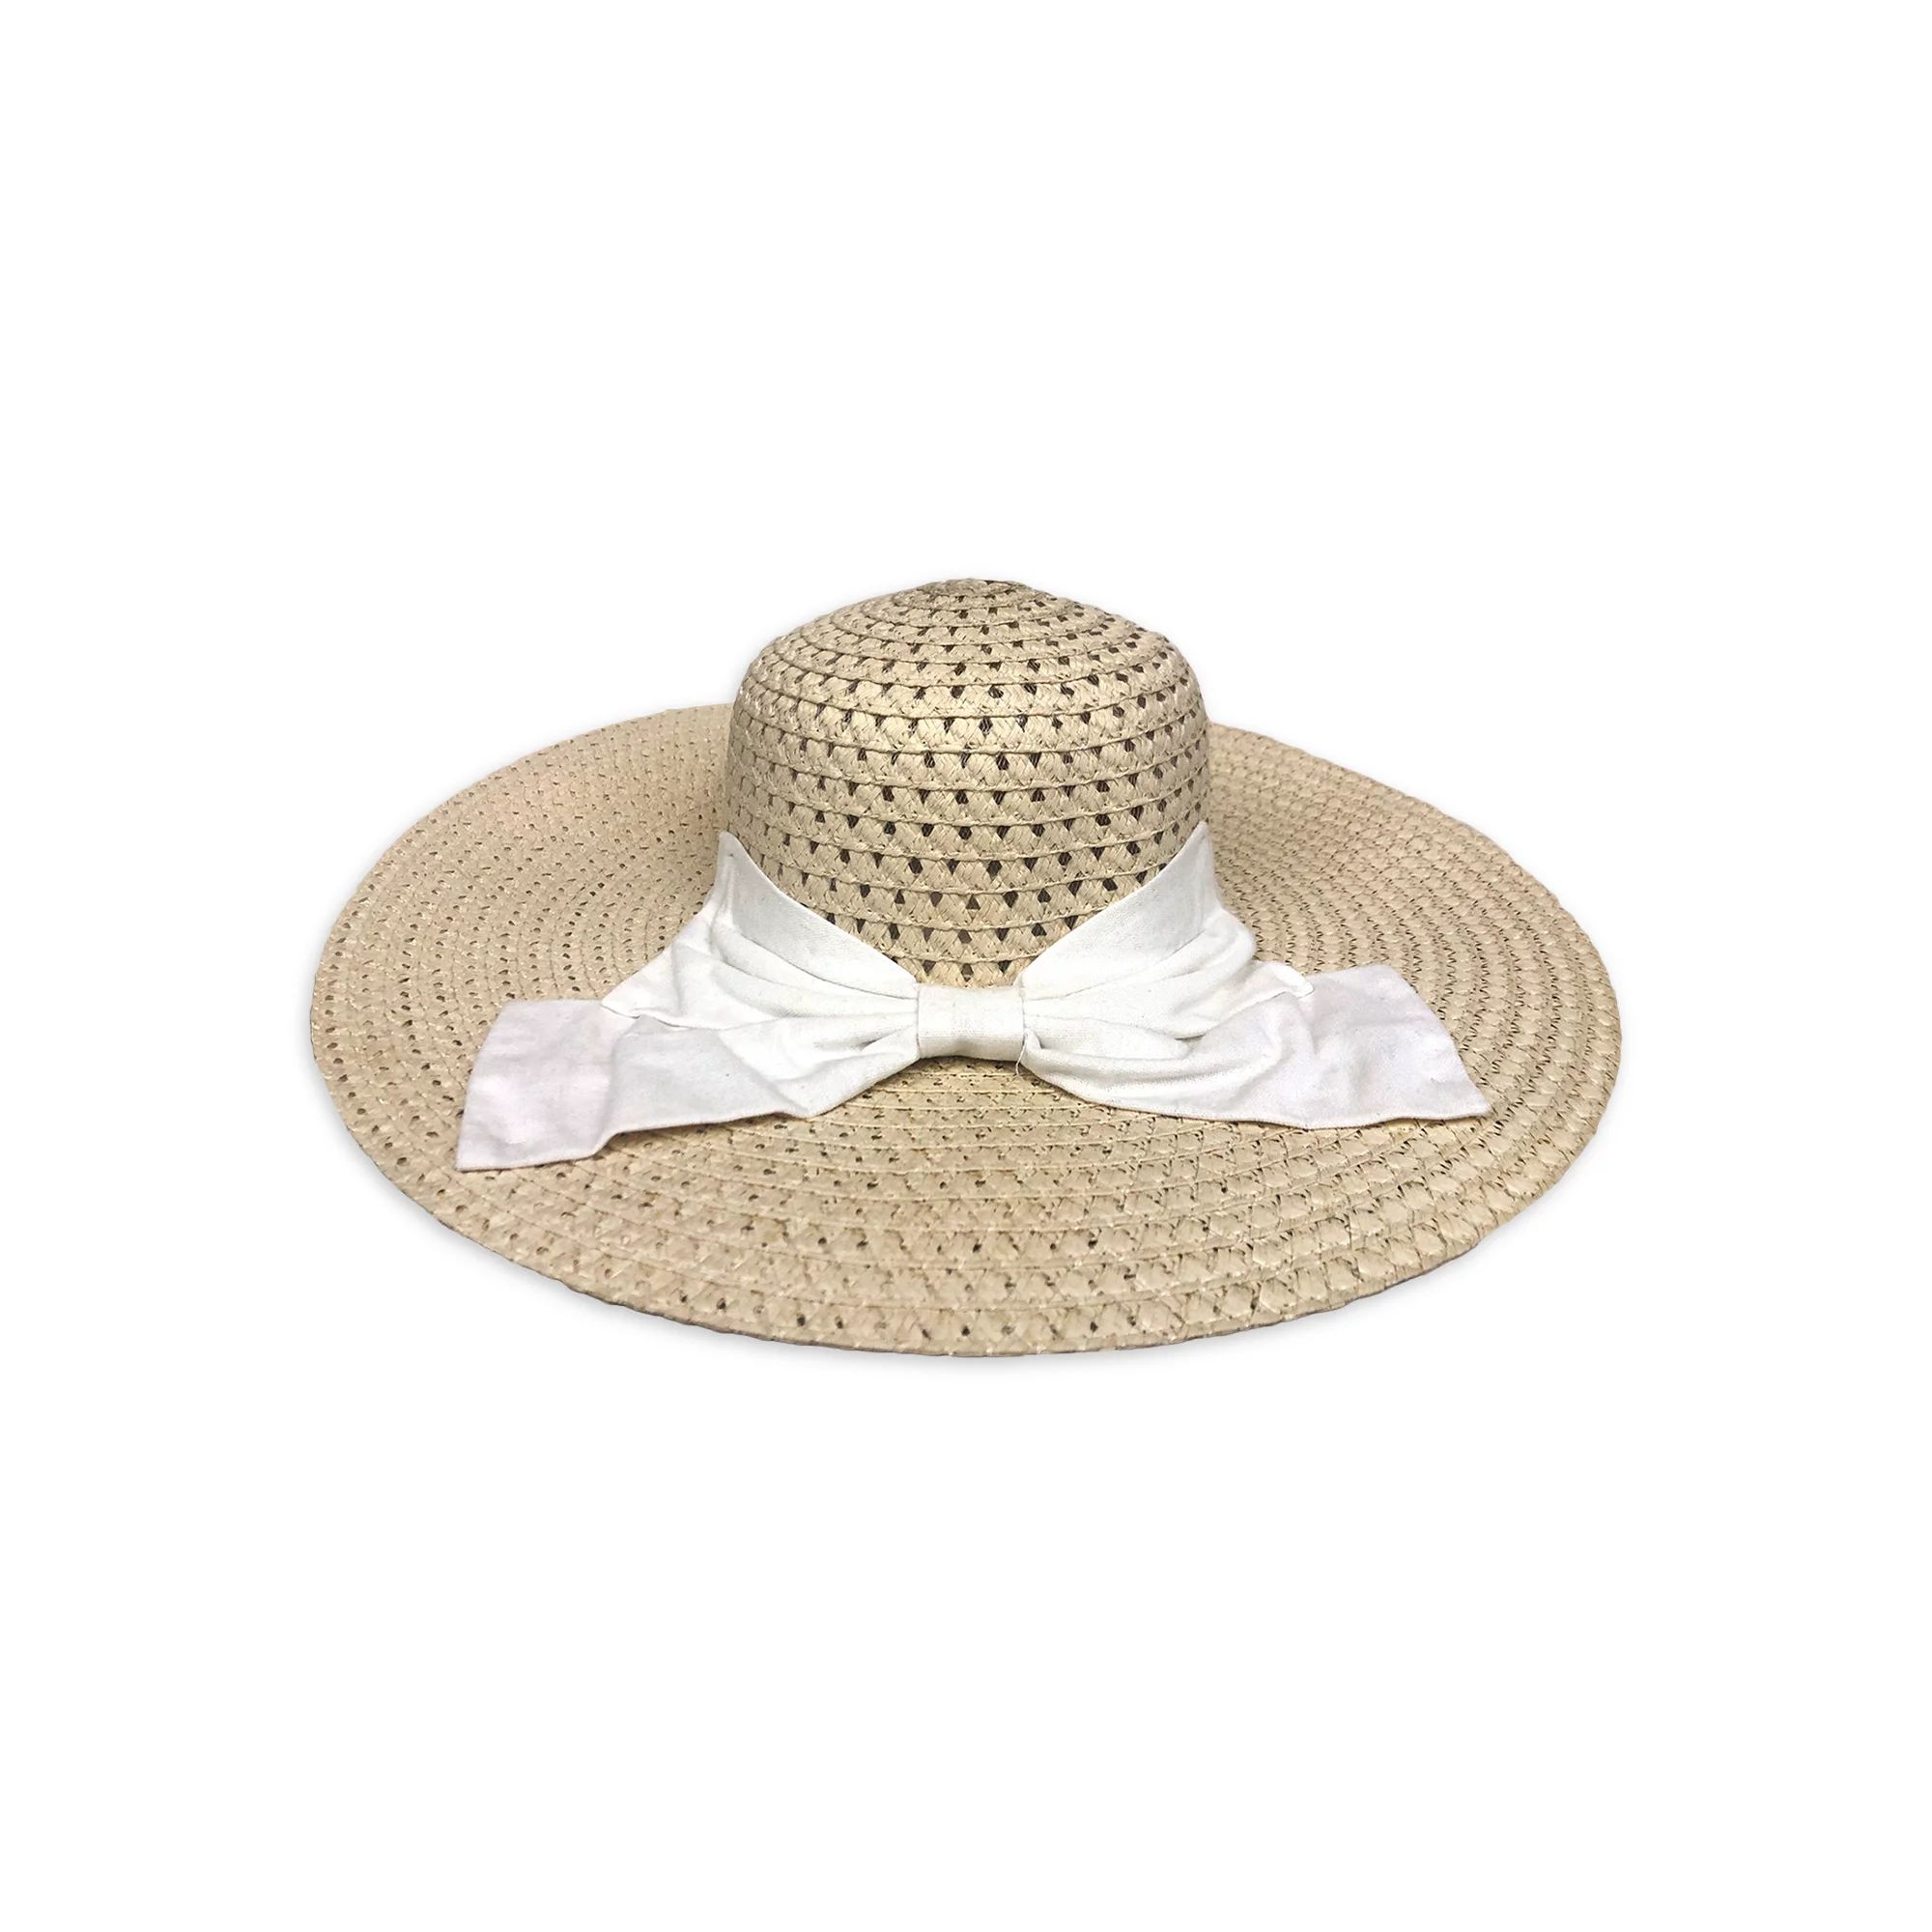 Women NYC Underground Straw Floppy Sun Beach Hat with Big Bow in Natural | Walmart (US)